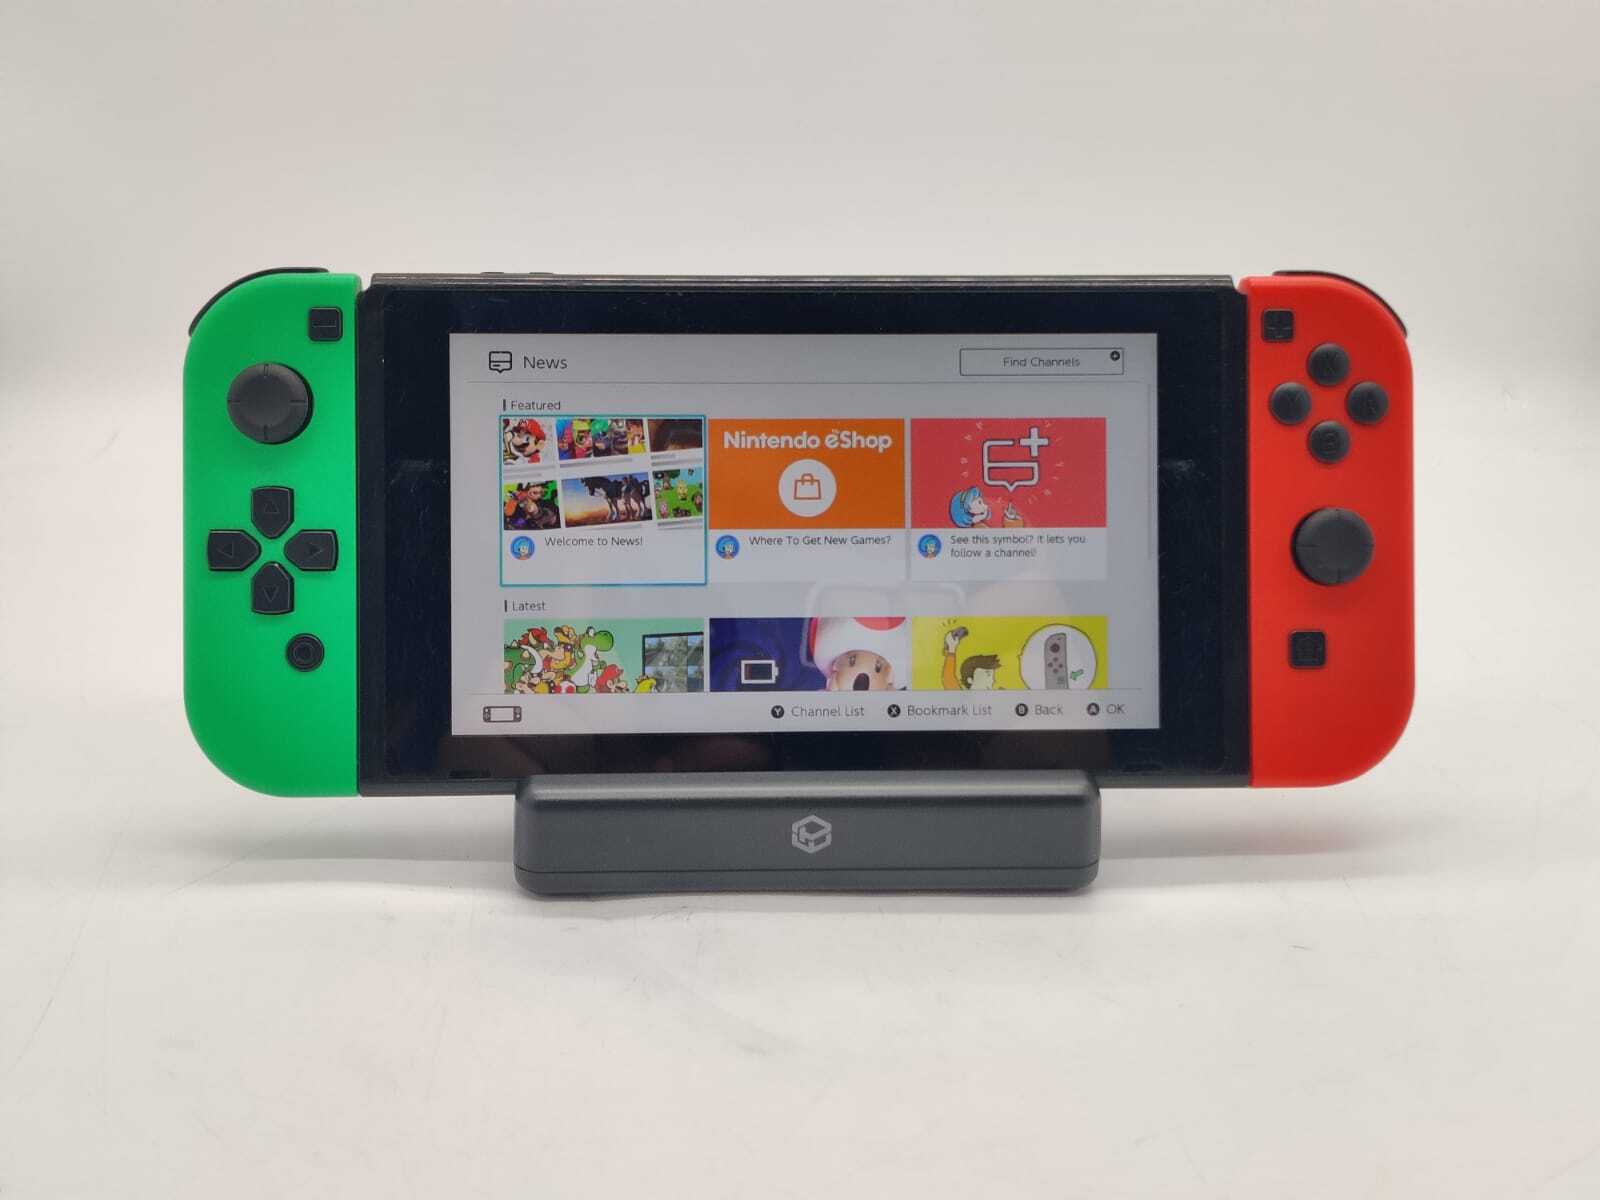 Nintendo Switch HAC-001(-01) Green/Red Handheld Gaming